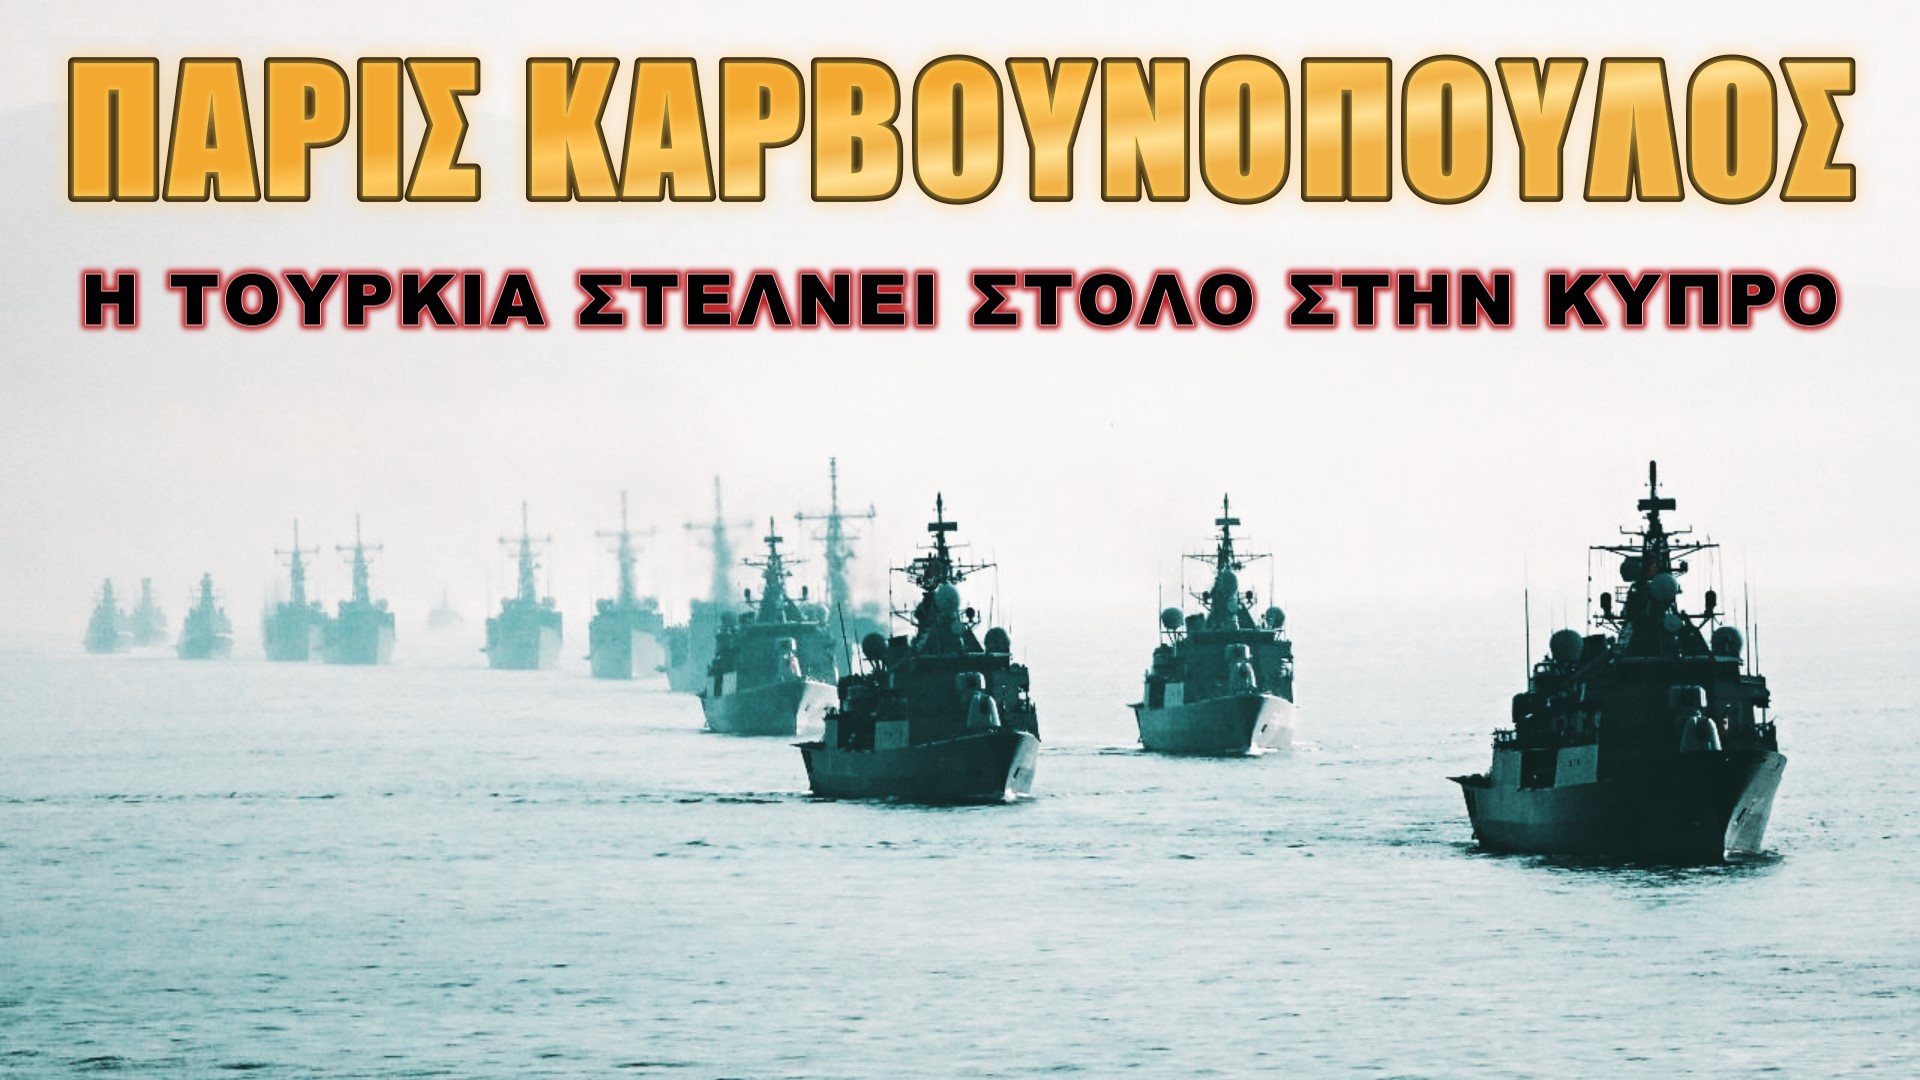 Πάρις Καρβουνόπουλος: Δεν υπάρχουν ήρεμα νερά με 50 πολεμικά πλοία!